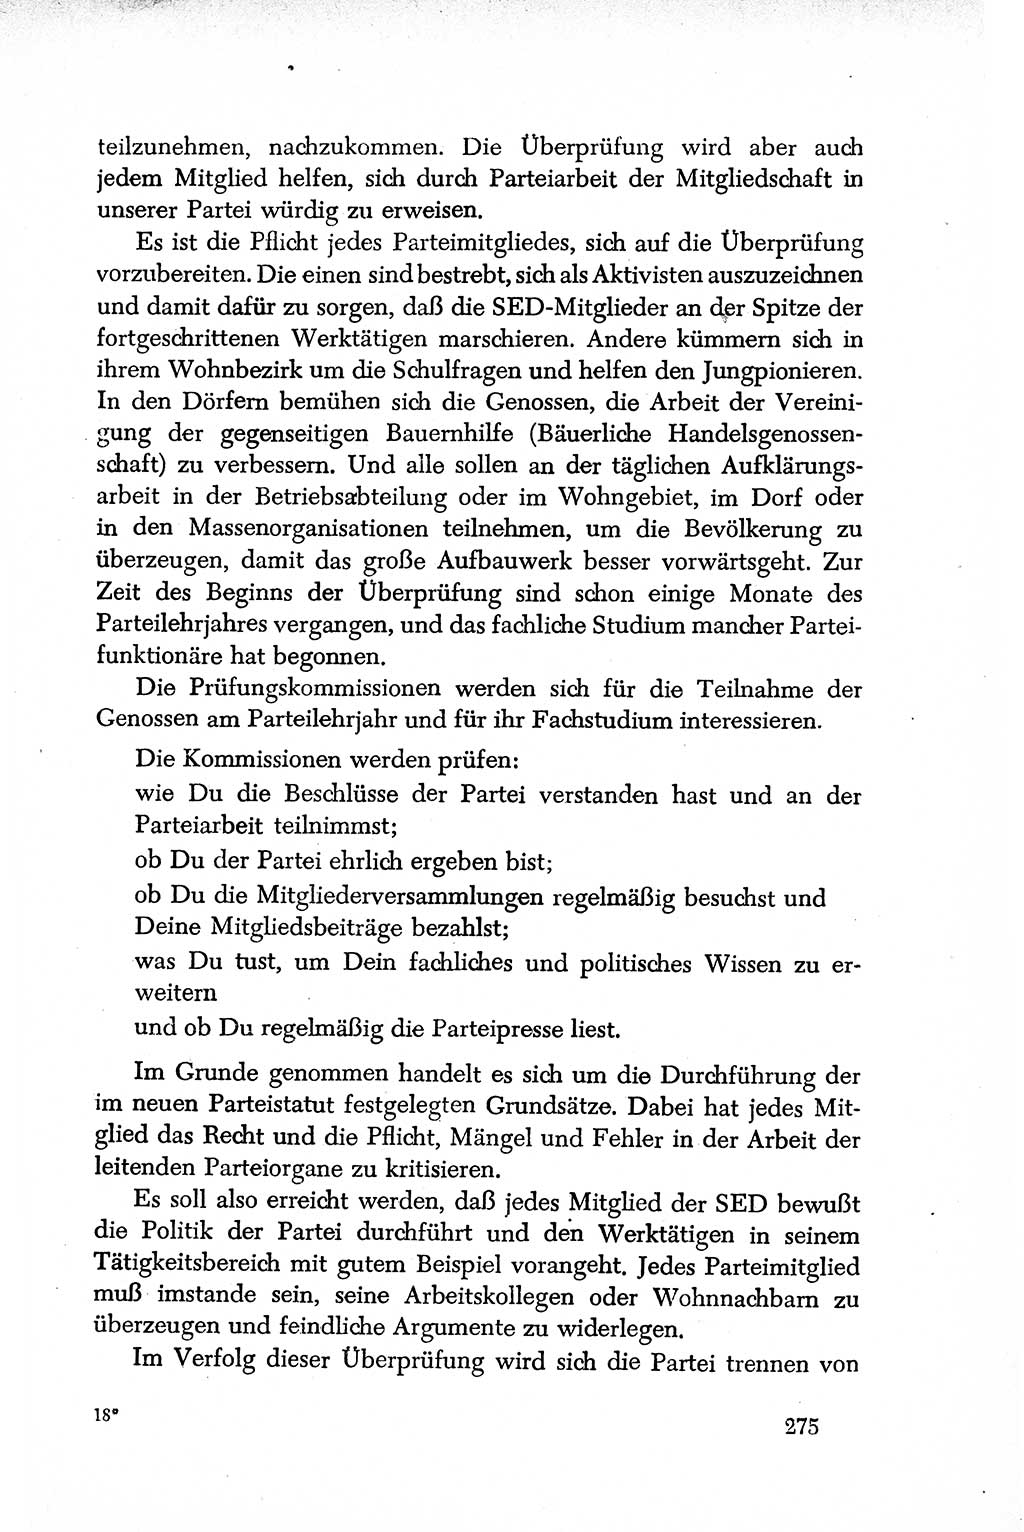 Dokumente der Sozialistischen Einheitspartei Deutschlands (SED) [Deutsche Demokratische Republik (DDR)] 1950-1952, Seite 275 (Dok. SED DDR 1950-1952, S. 275)